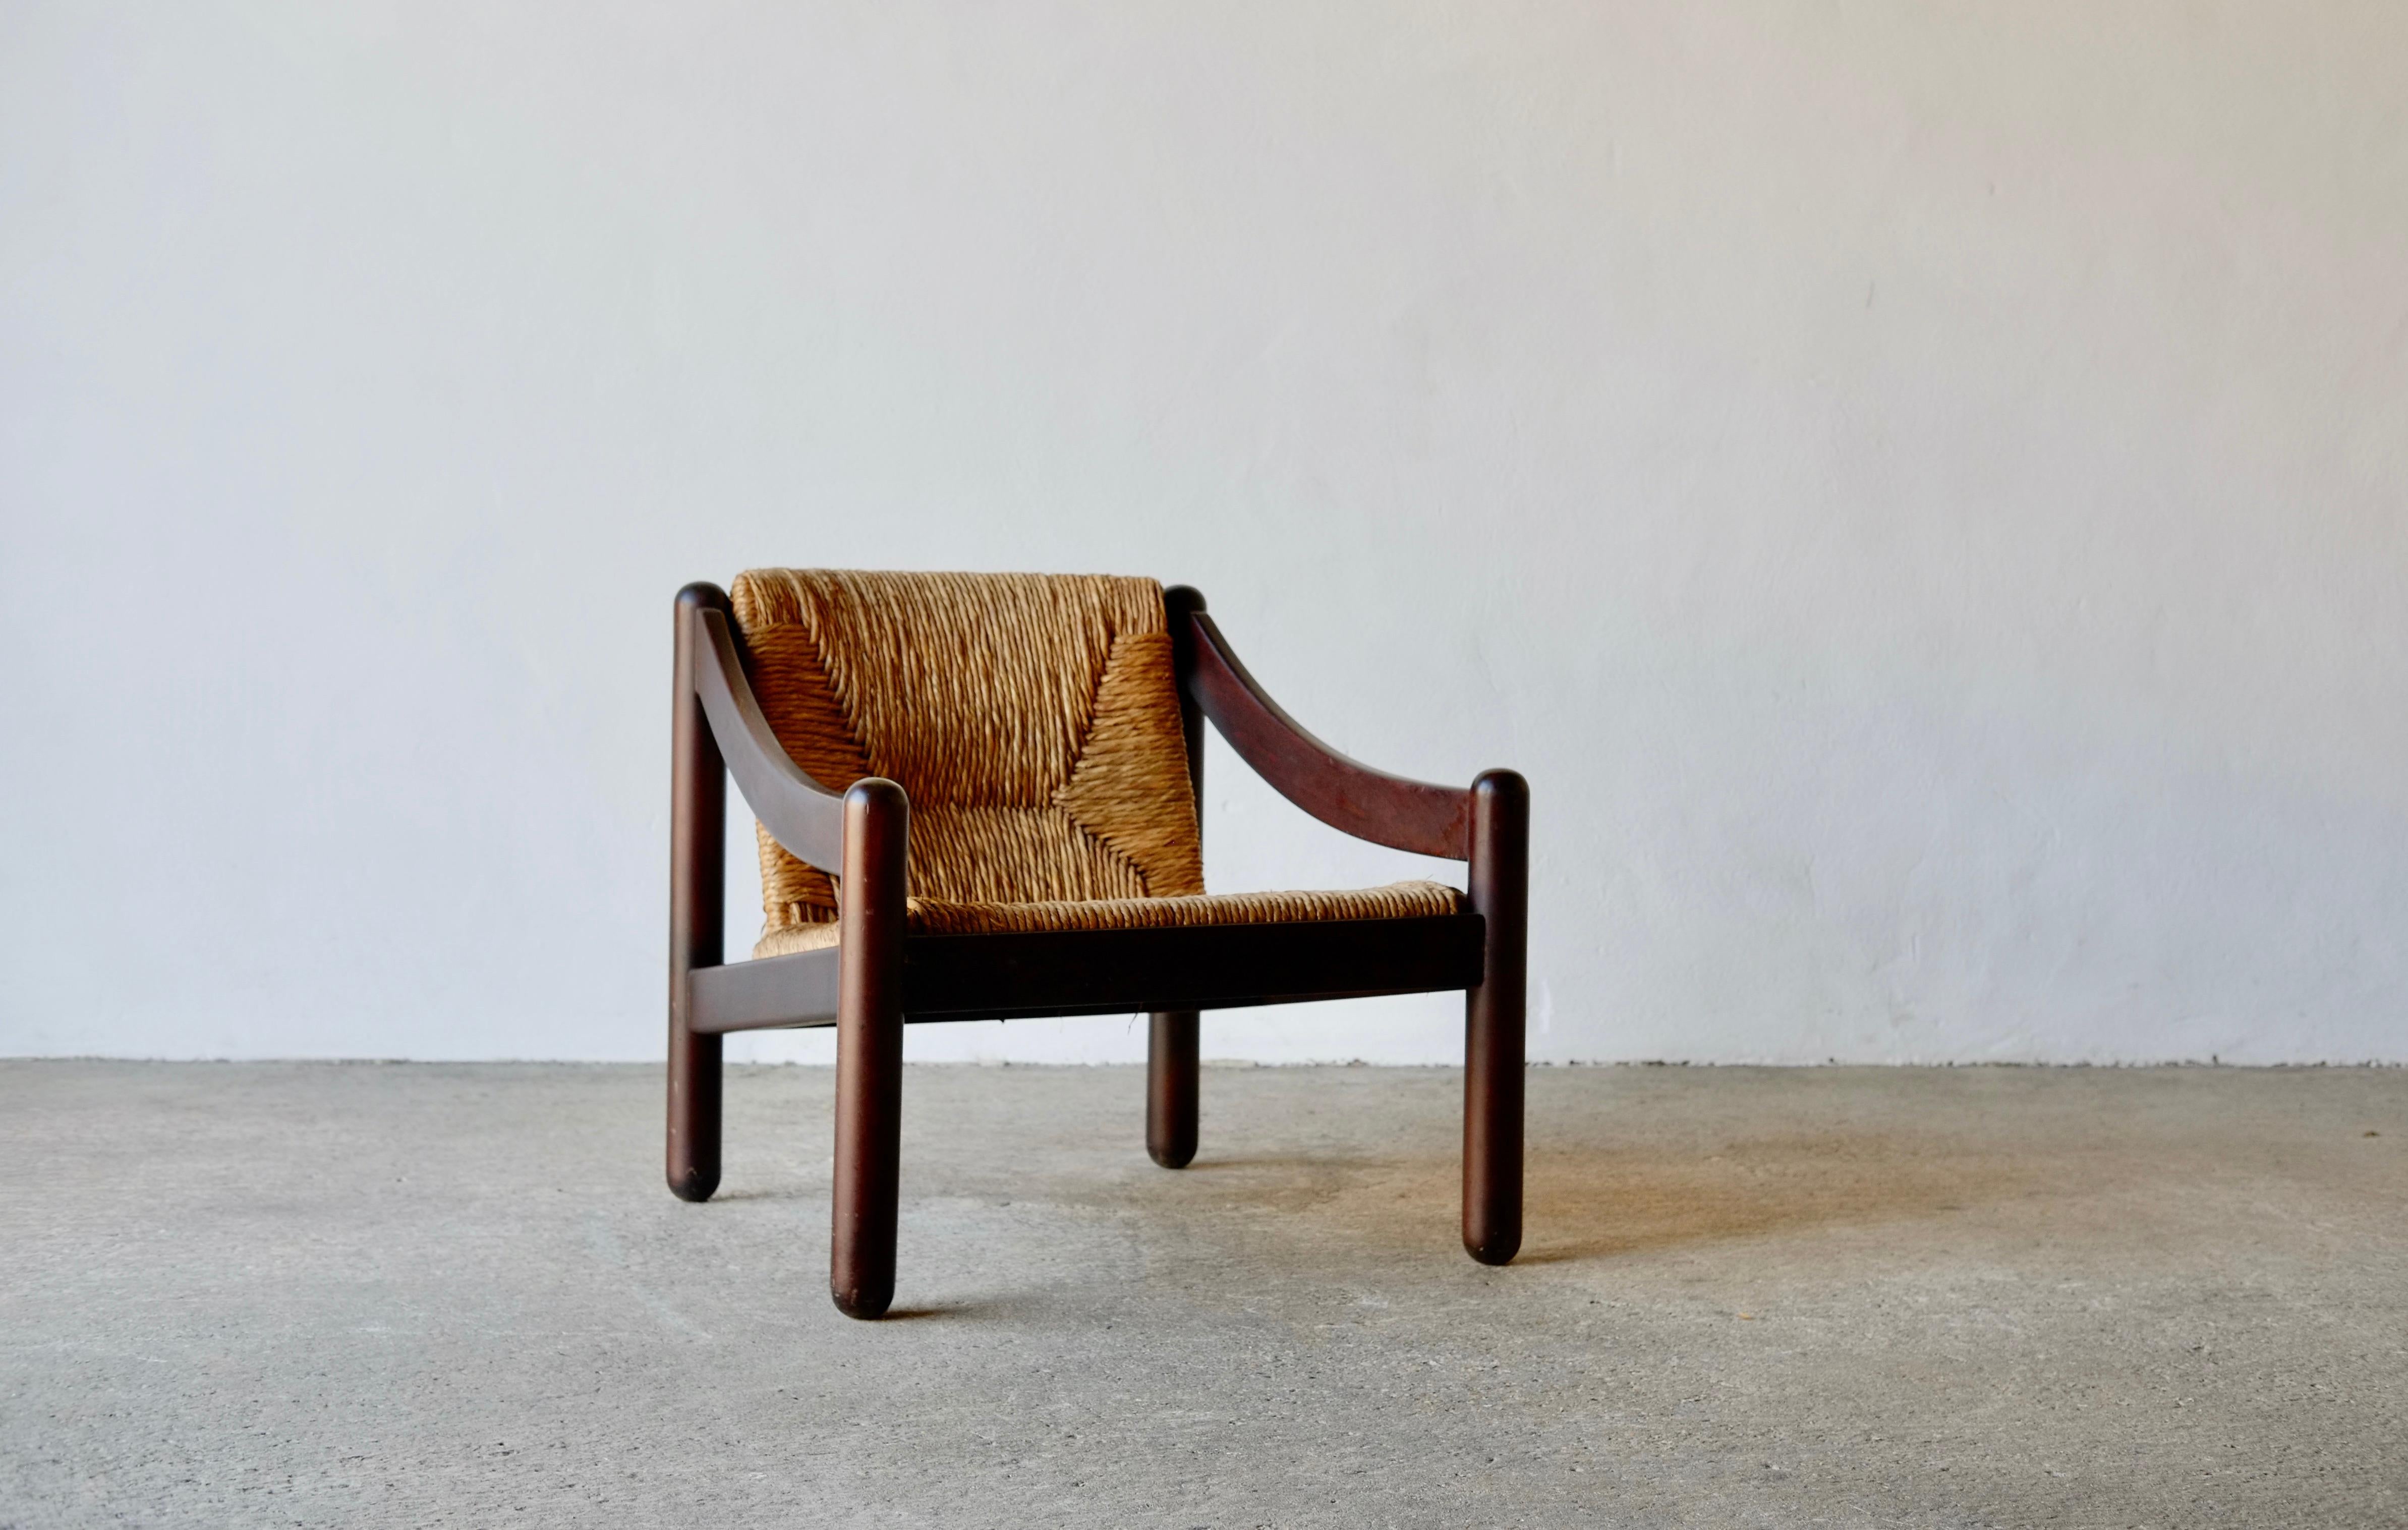 Un fauteuil modèle 930 conçu par Vico Magistretti dans le cadre de la gamme Carimate pour Figli di Amedeo Cassina en 1966. Ce fauteuil est un exemple particulièrement rare de la gamme Carimate, contrairement aux chaises de salle à manger les plus